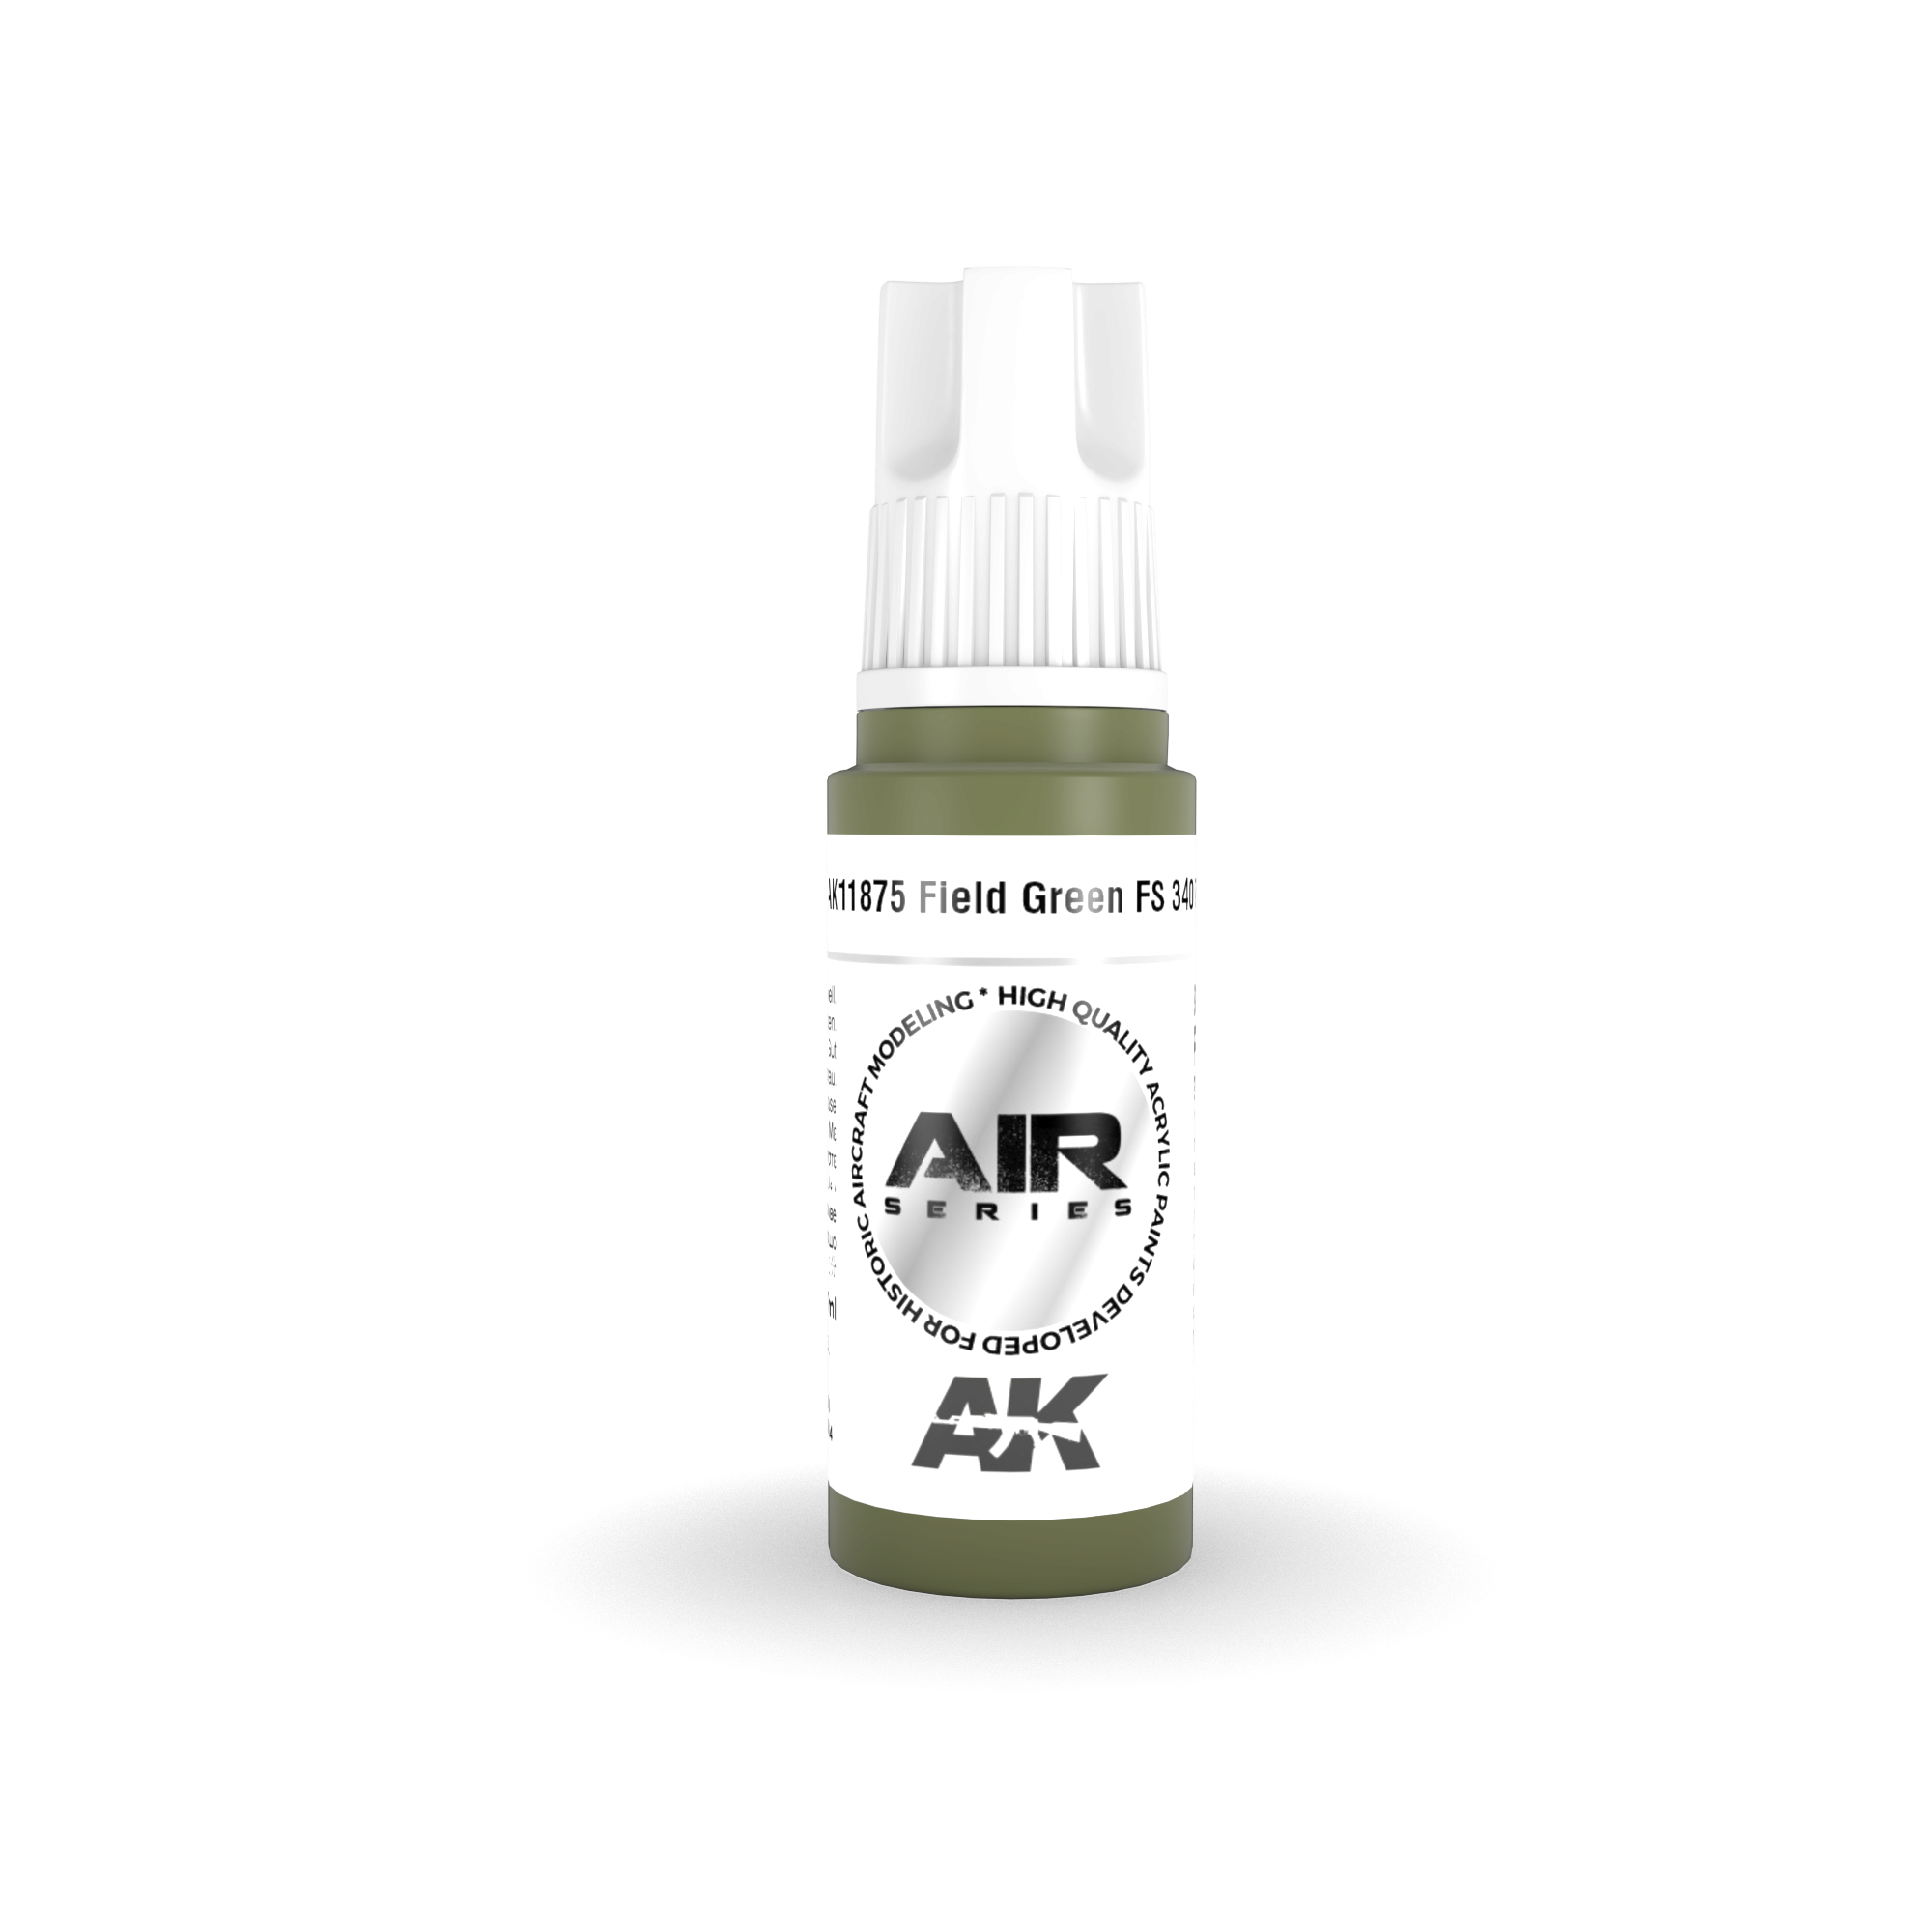 AK AK11875 3rd gen. Field Green FS 34097